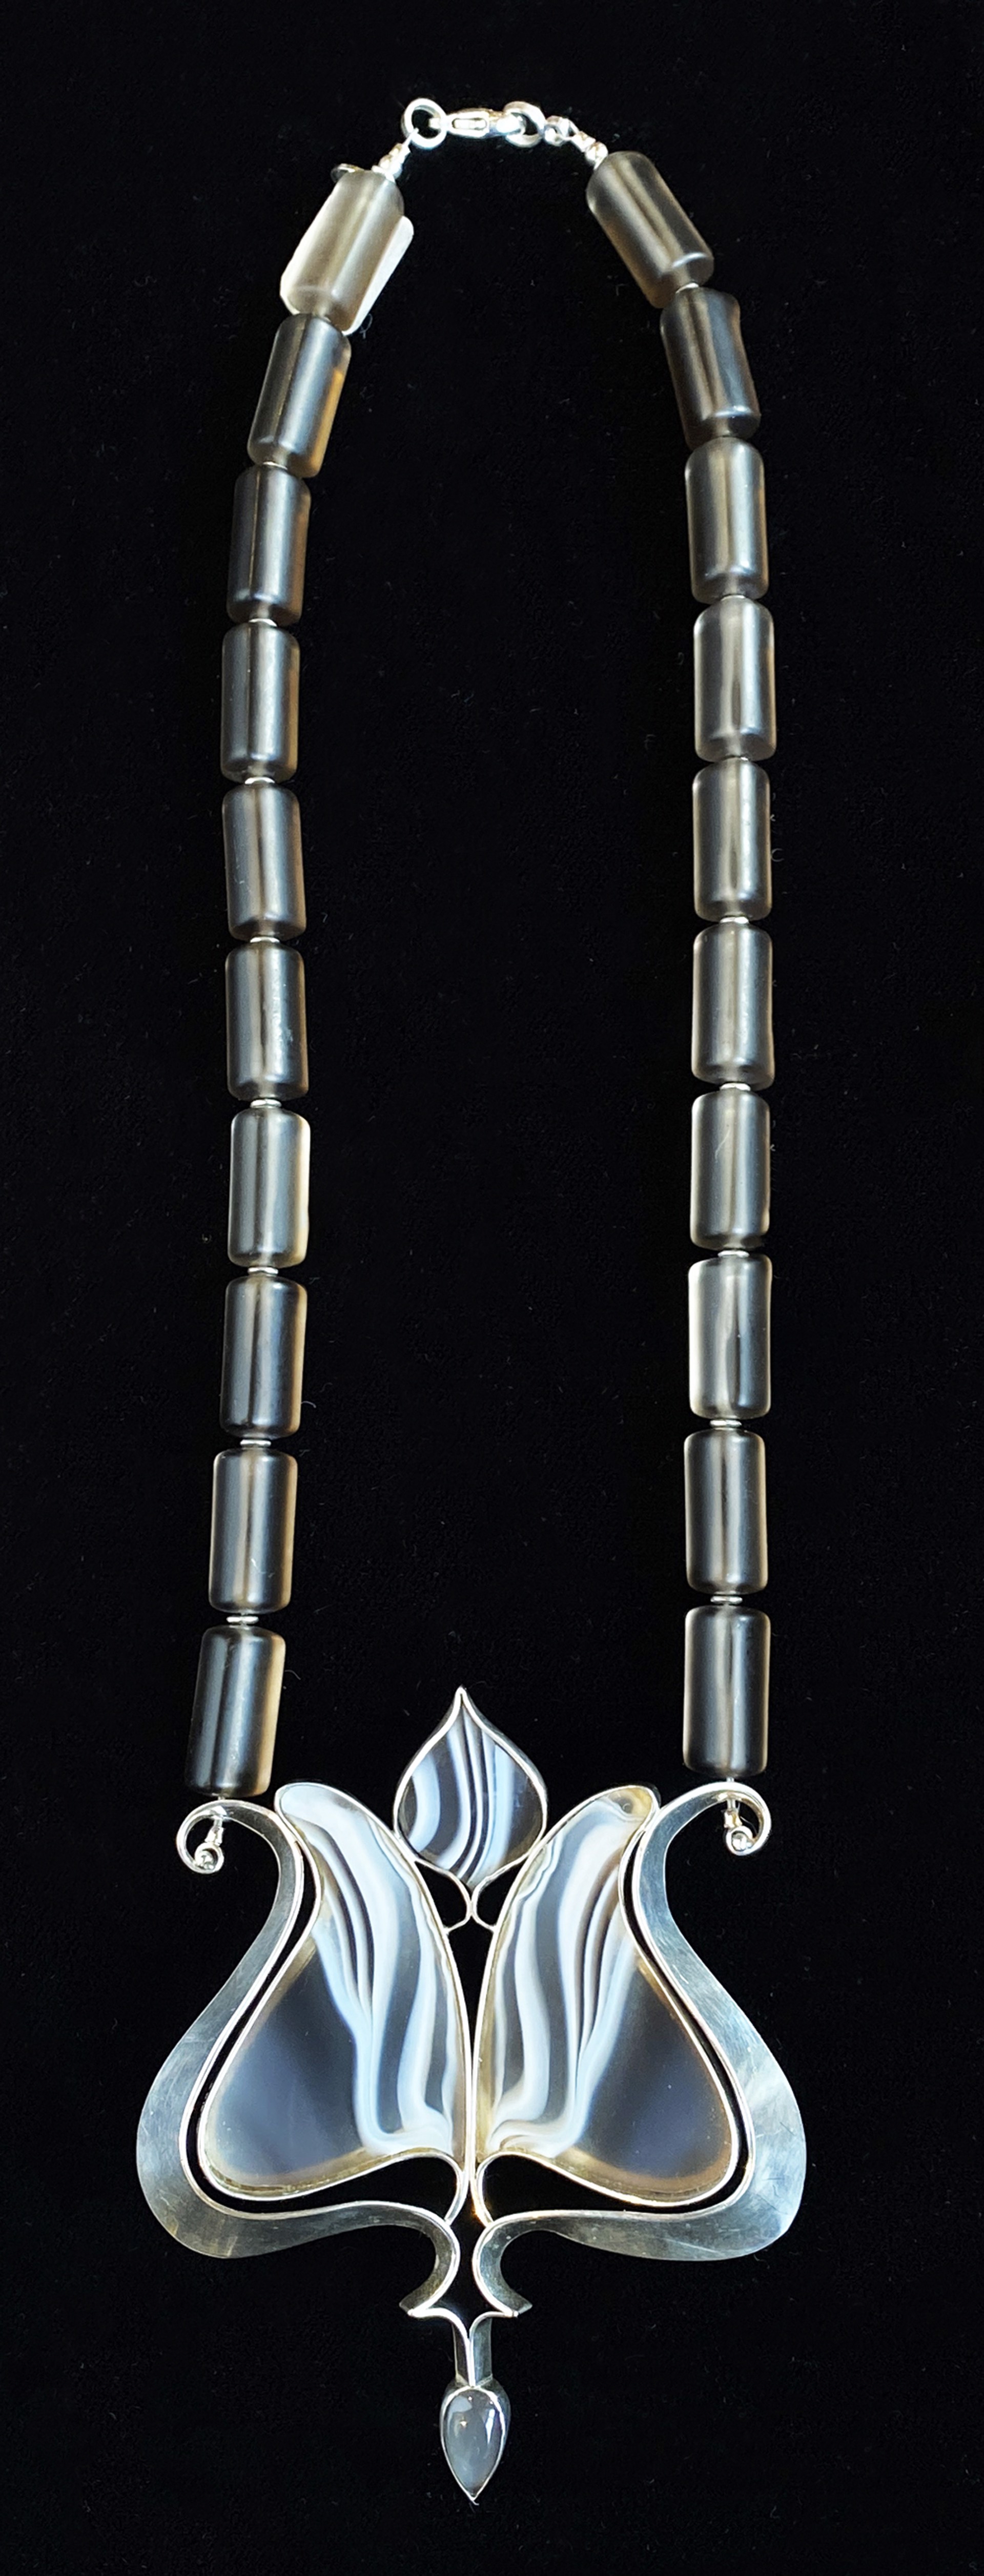 Necklace #7 by Marilynn Nicholson